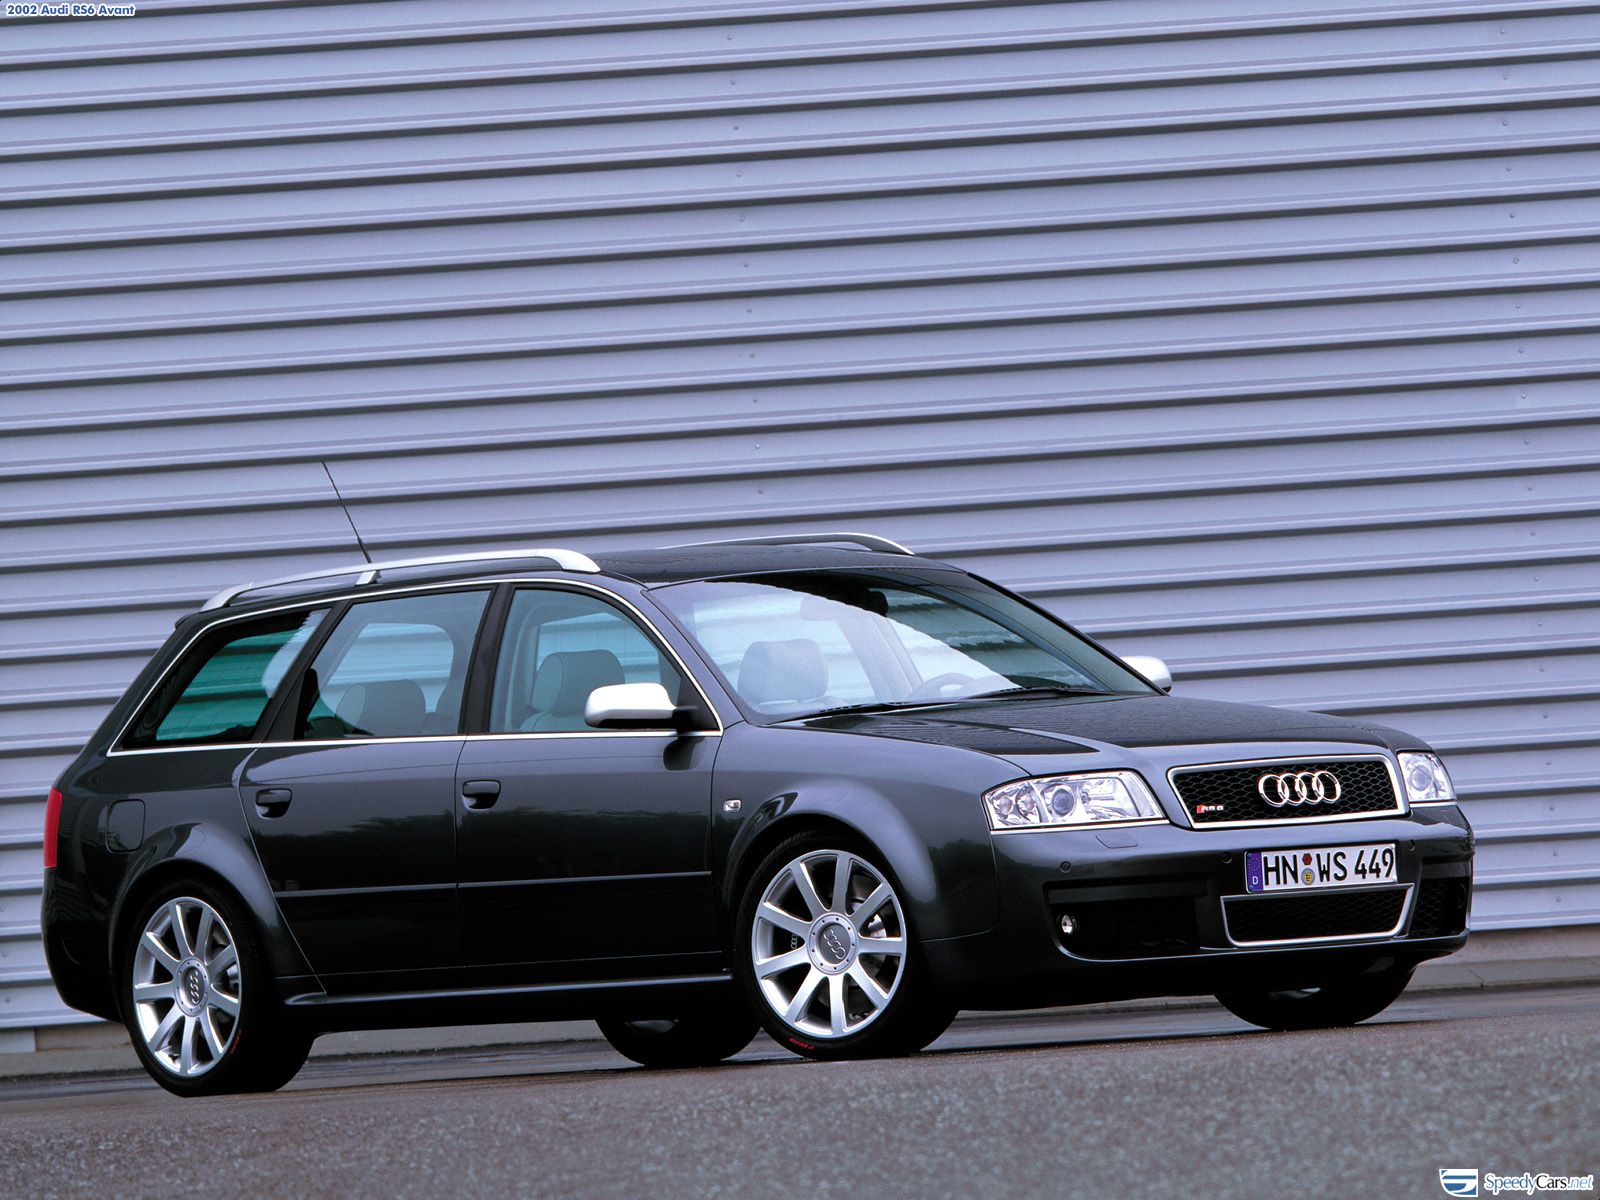 Ауди универсал 2002. Audi a6 c5 универсал. Audi rs6 2002. Audi a6 c5 Авант. Ауди рс6 с5 универсал.